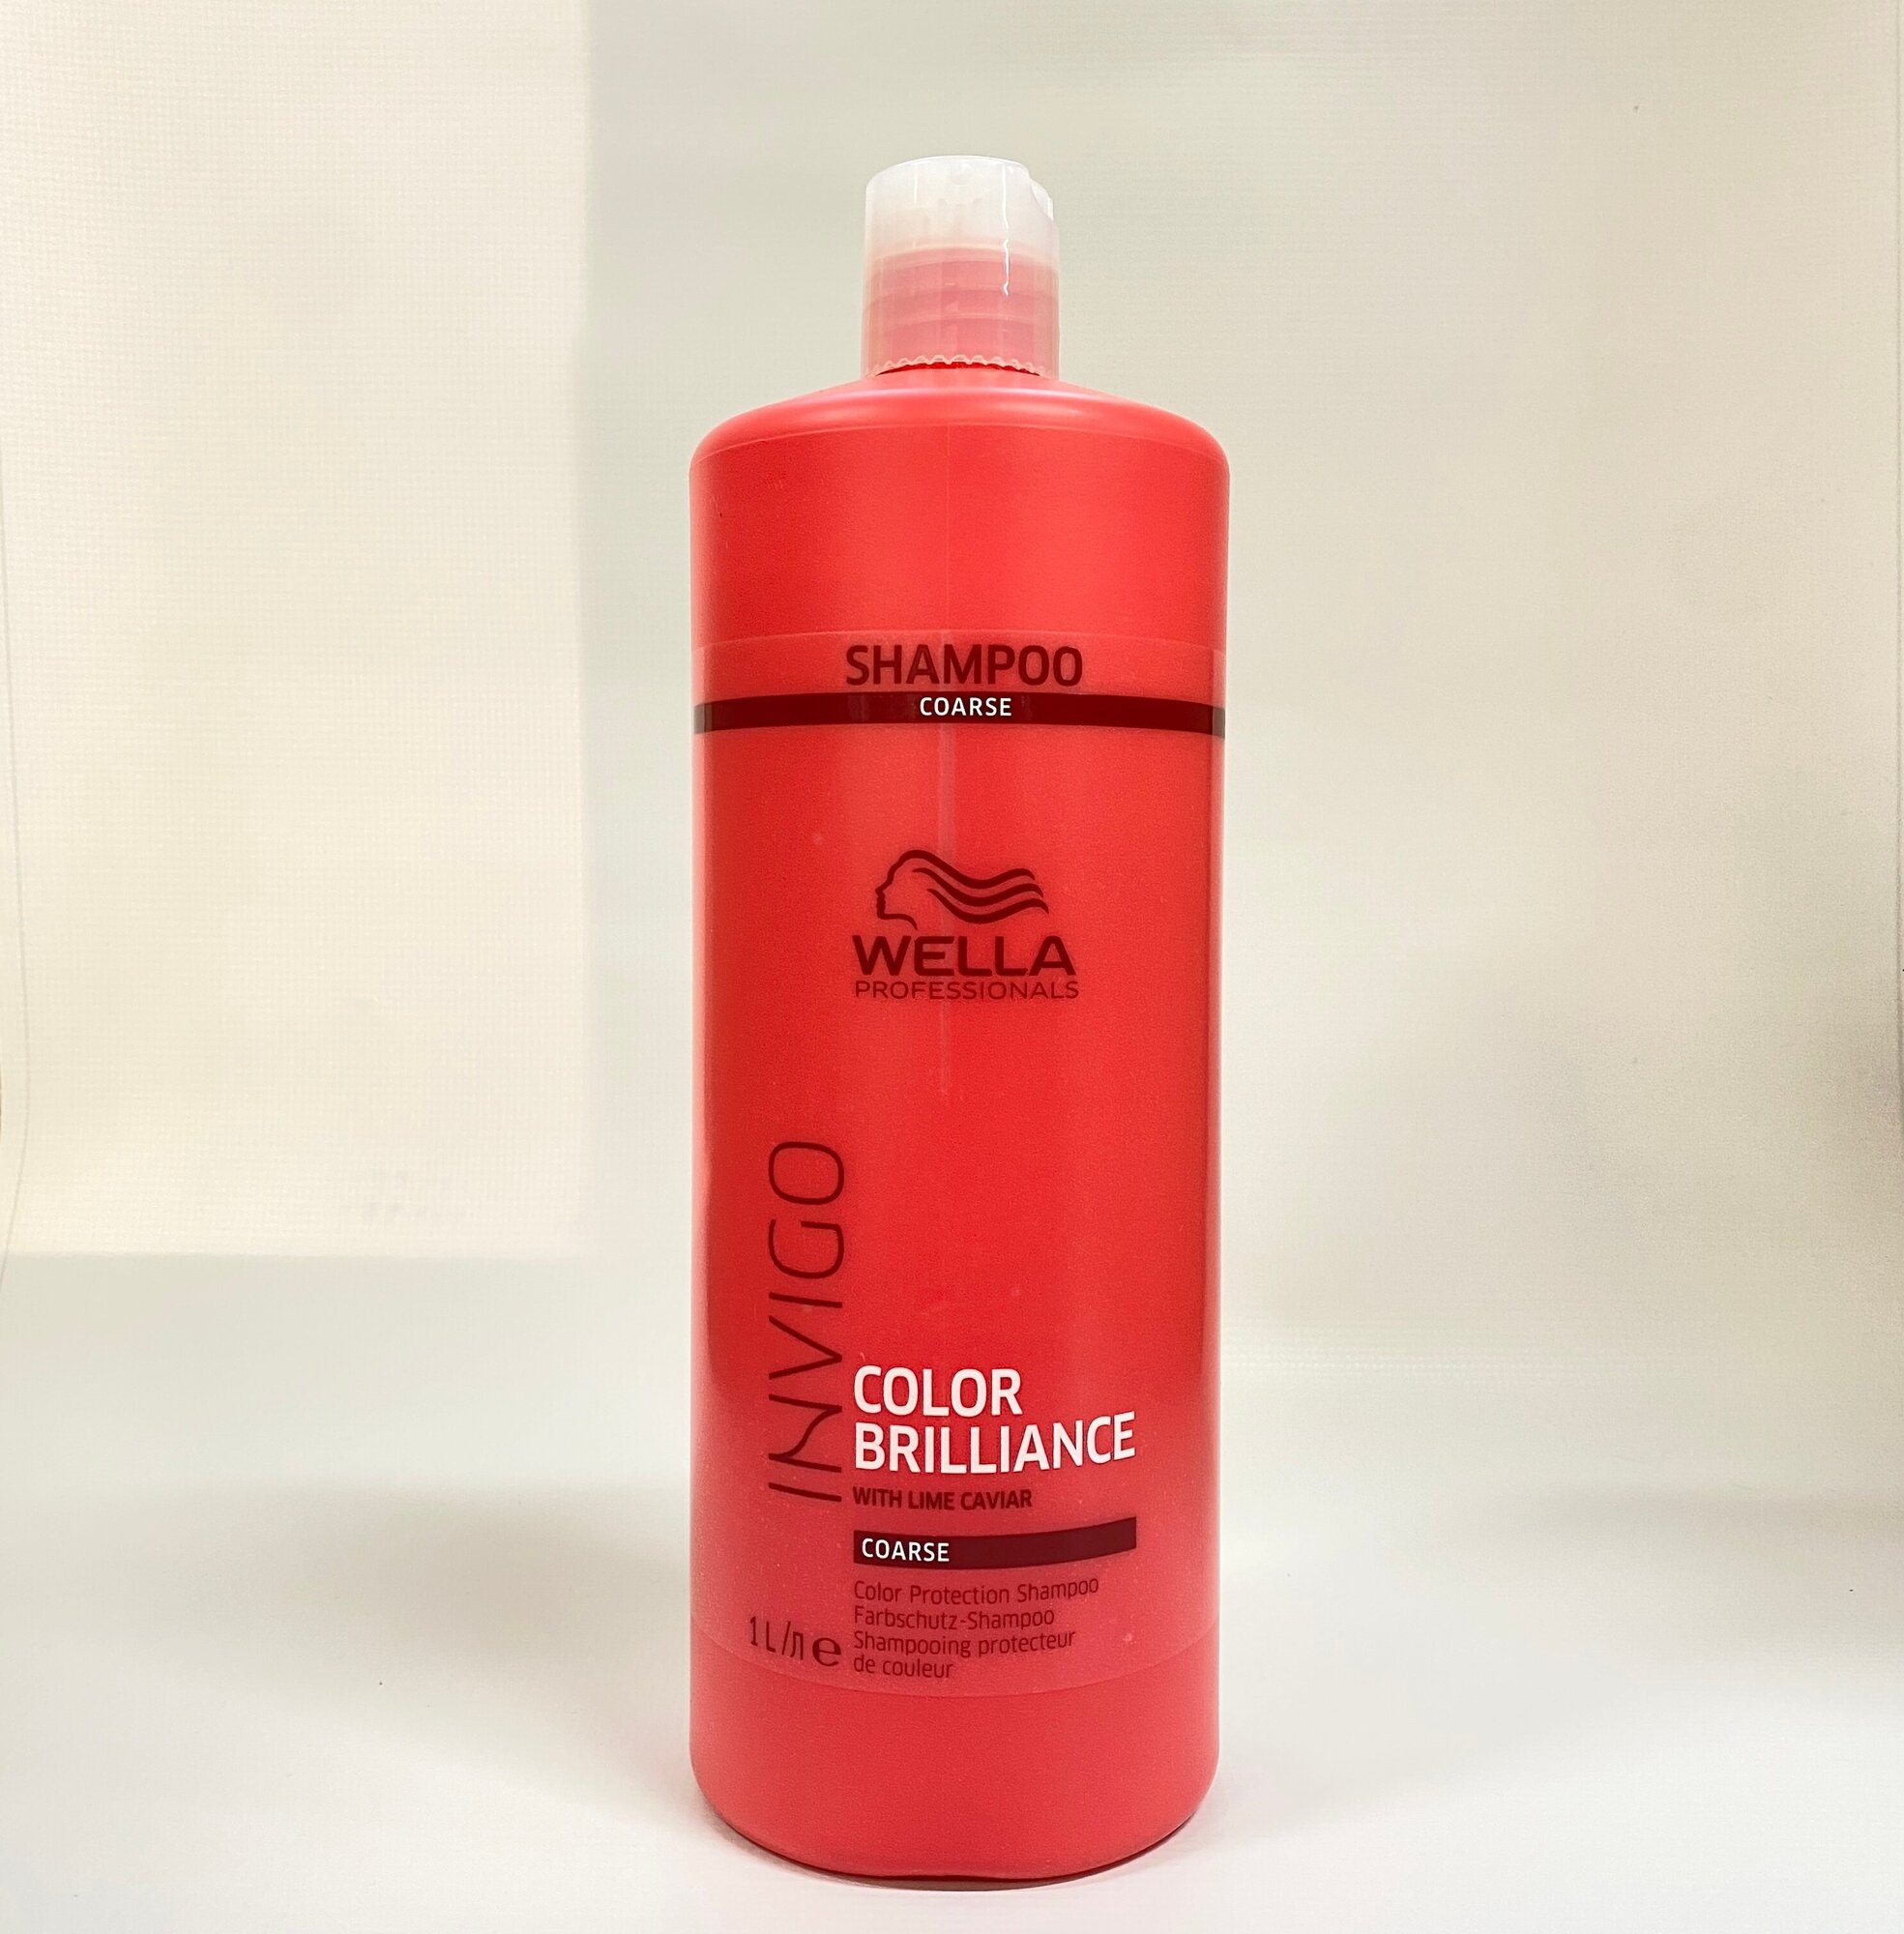 Wella Professionals Шампунь для защиты цвета окрашенных жестких волос, 250 мл (Wella Professionals, ) - фото №4